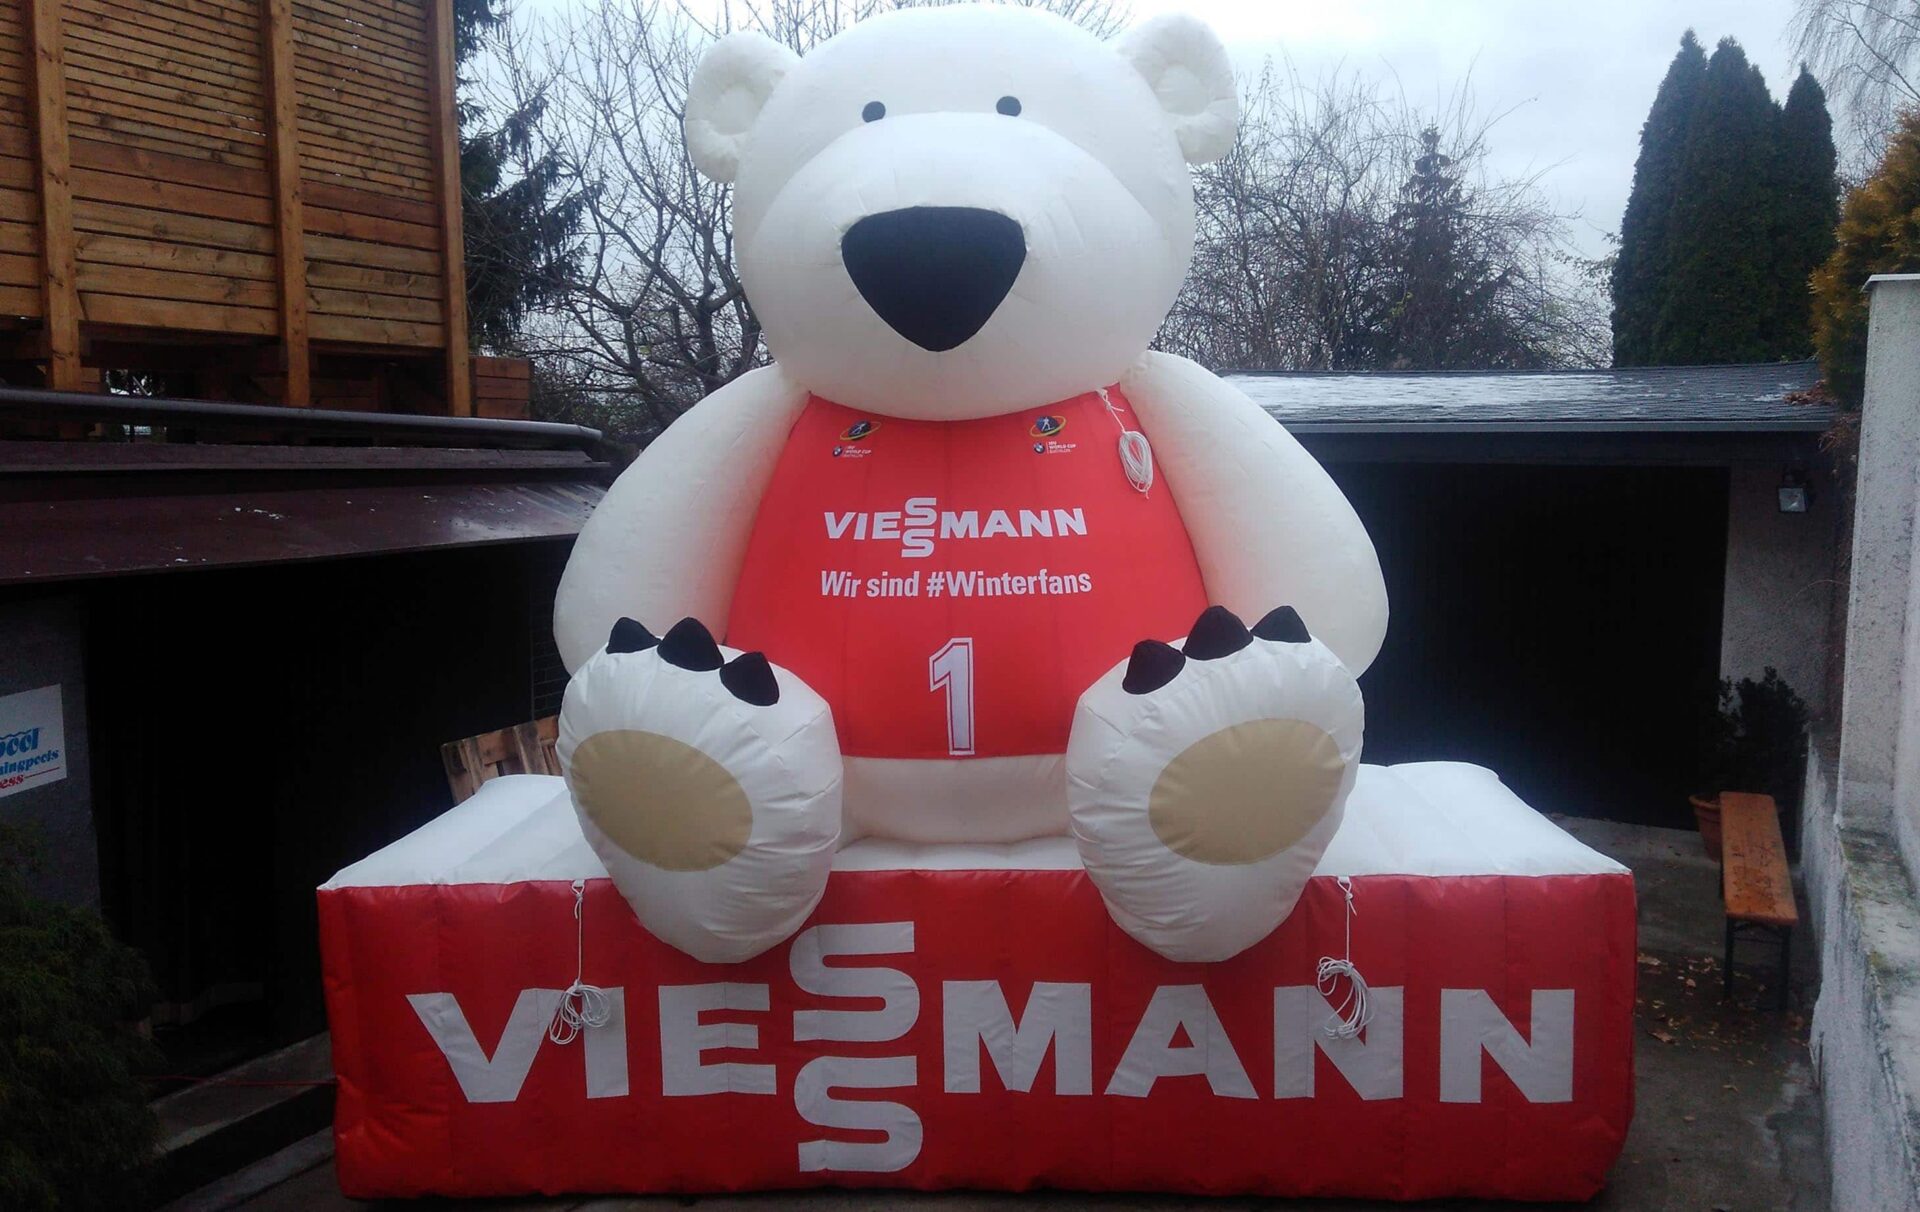 inflatable viessmann Teddy bear